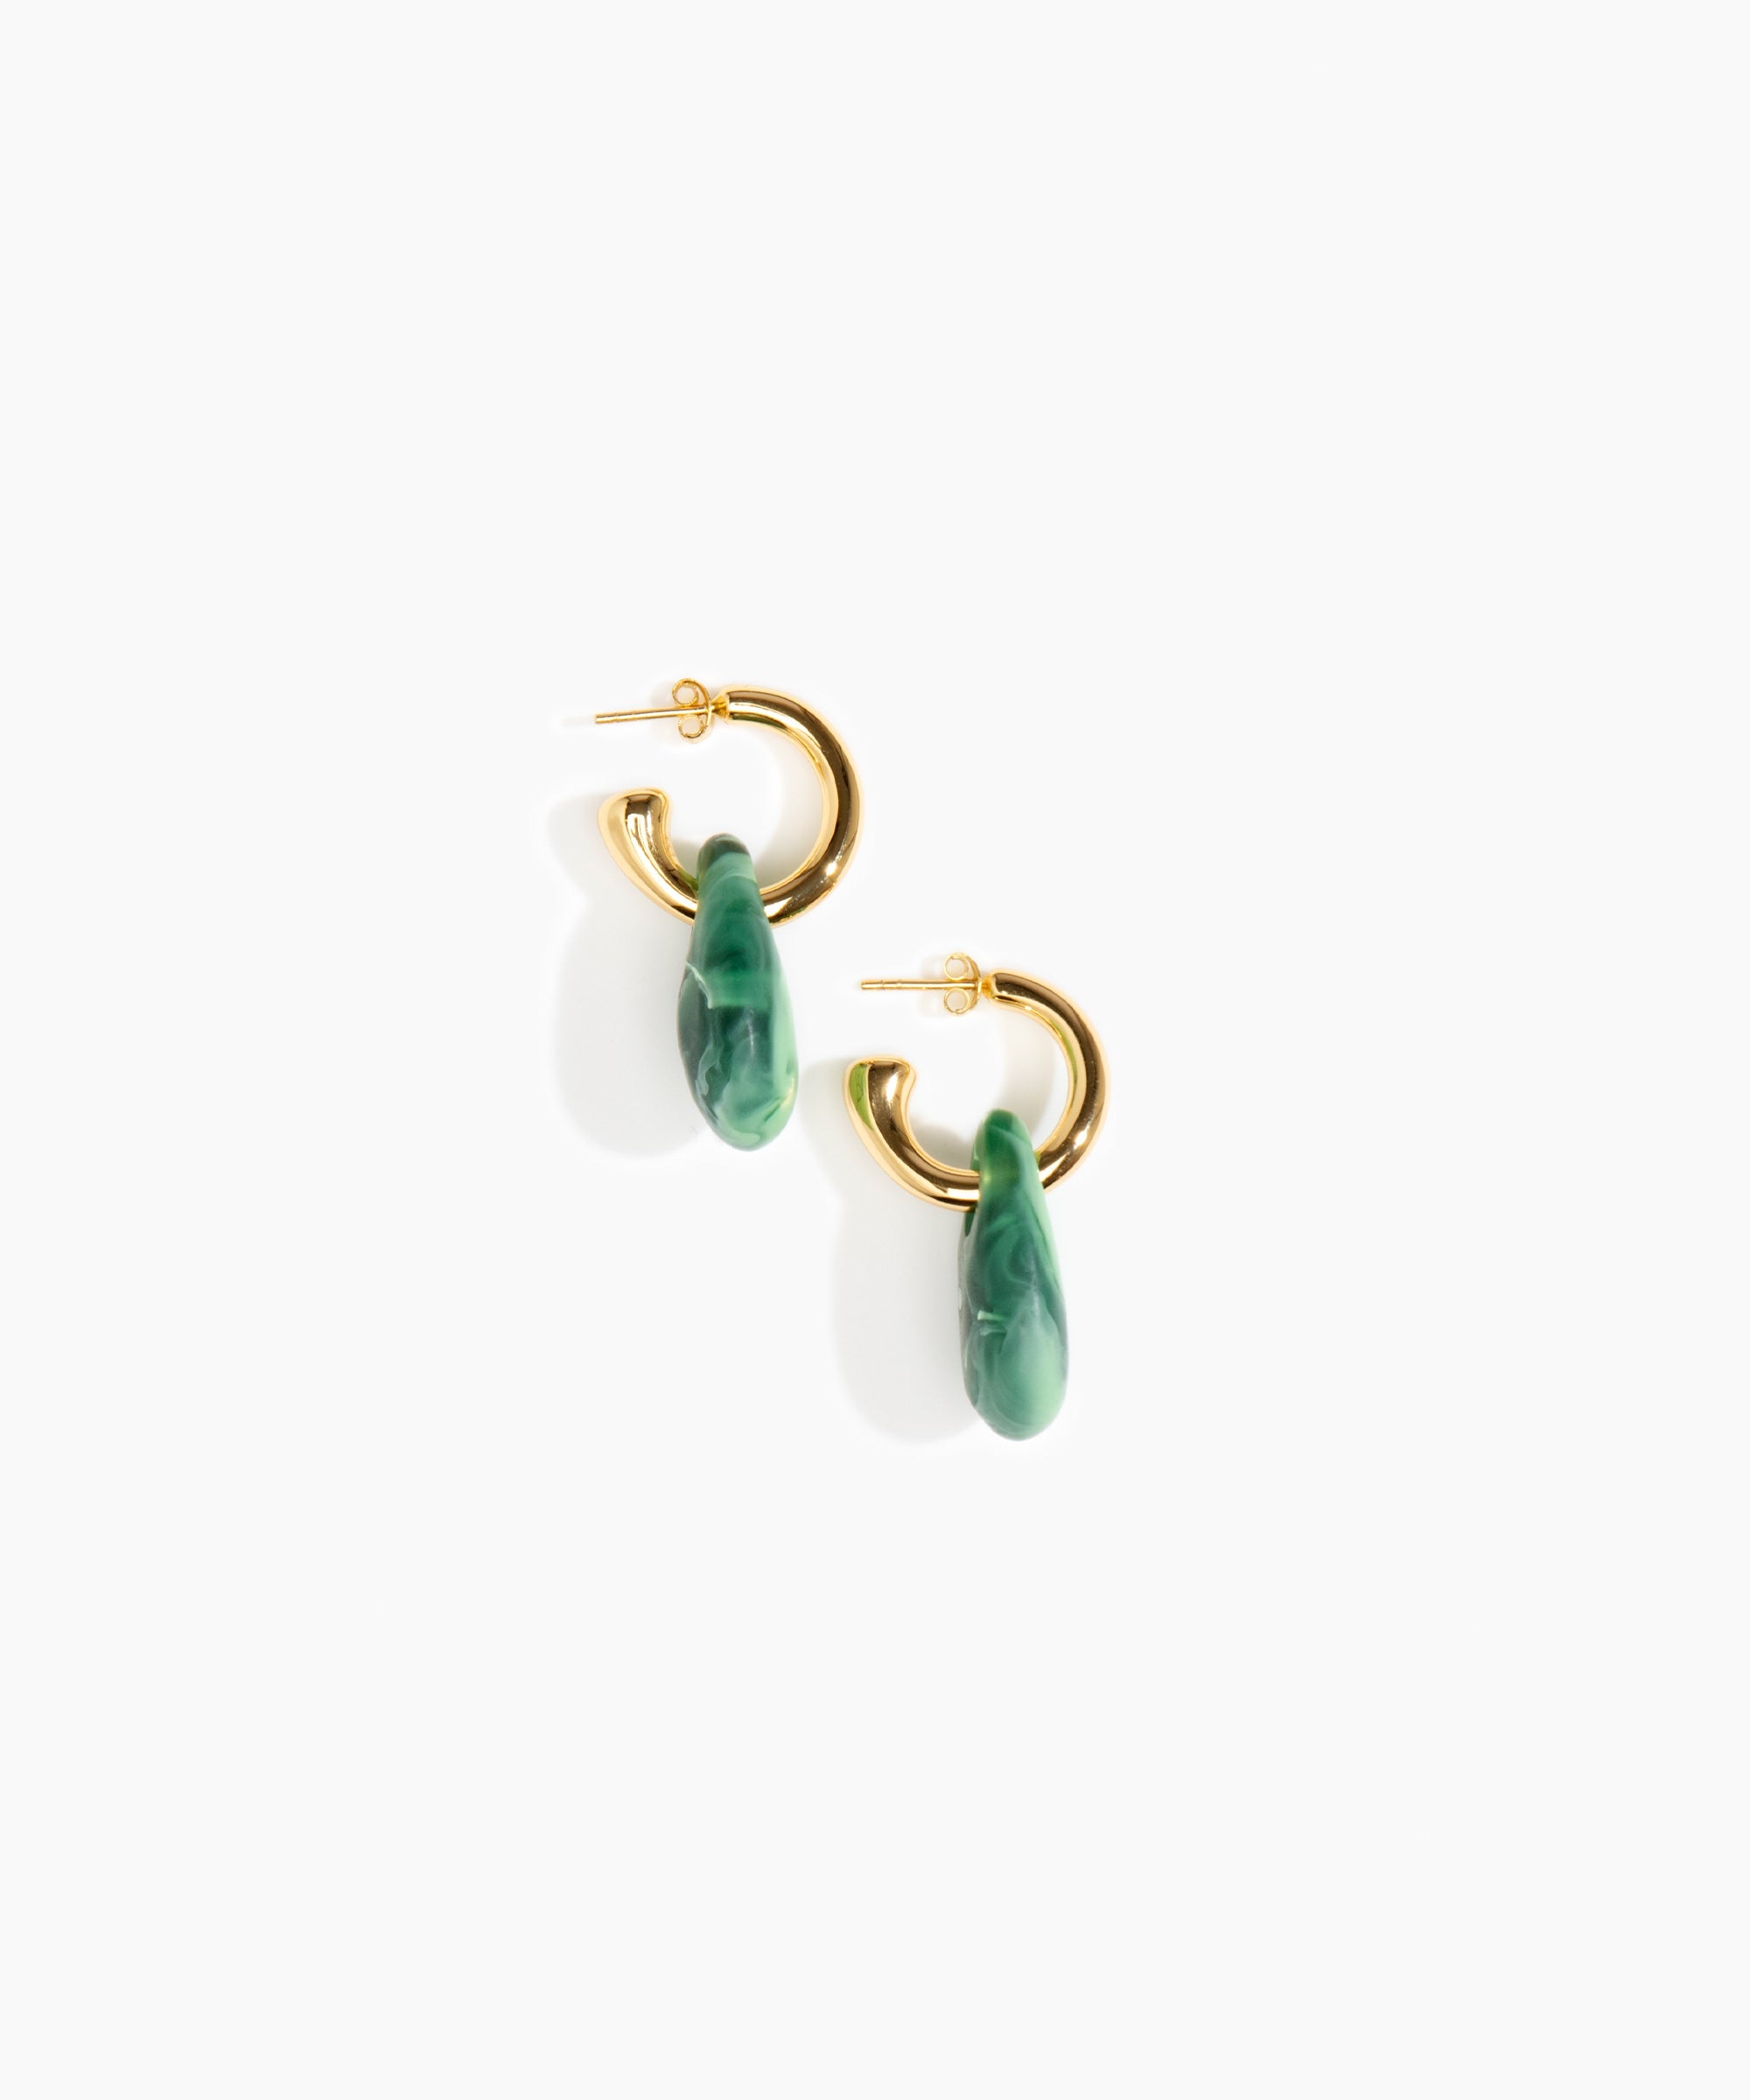 Dinosaur Designs Small Rock Hoop Earrings Earrings in Moss color resin with Brass Hoop Material